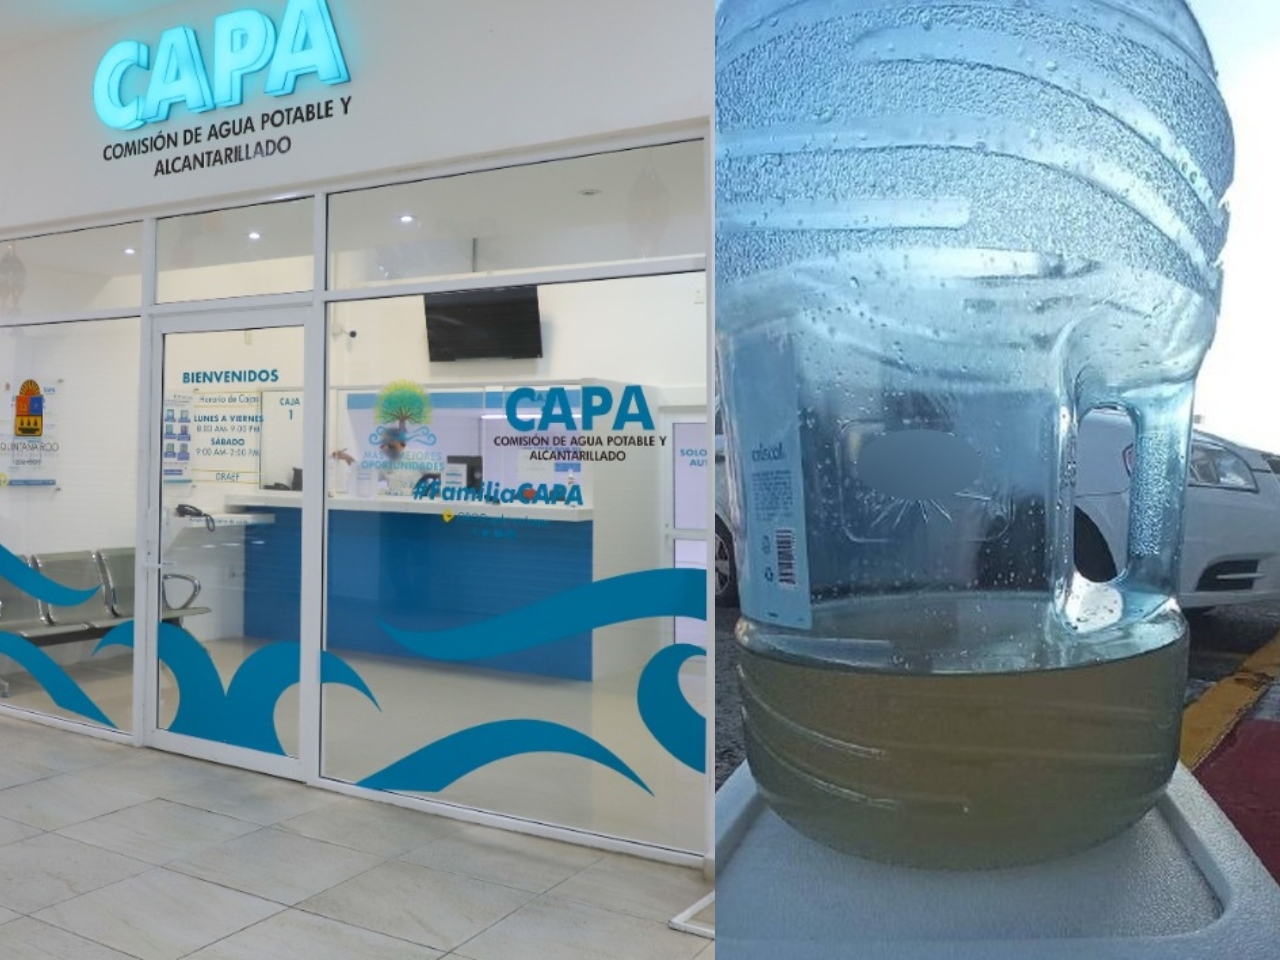 CAPA envía agua sucia a vecinos de Chetumal tras días sin el servicio